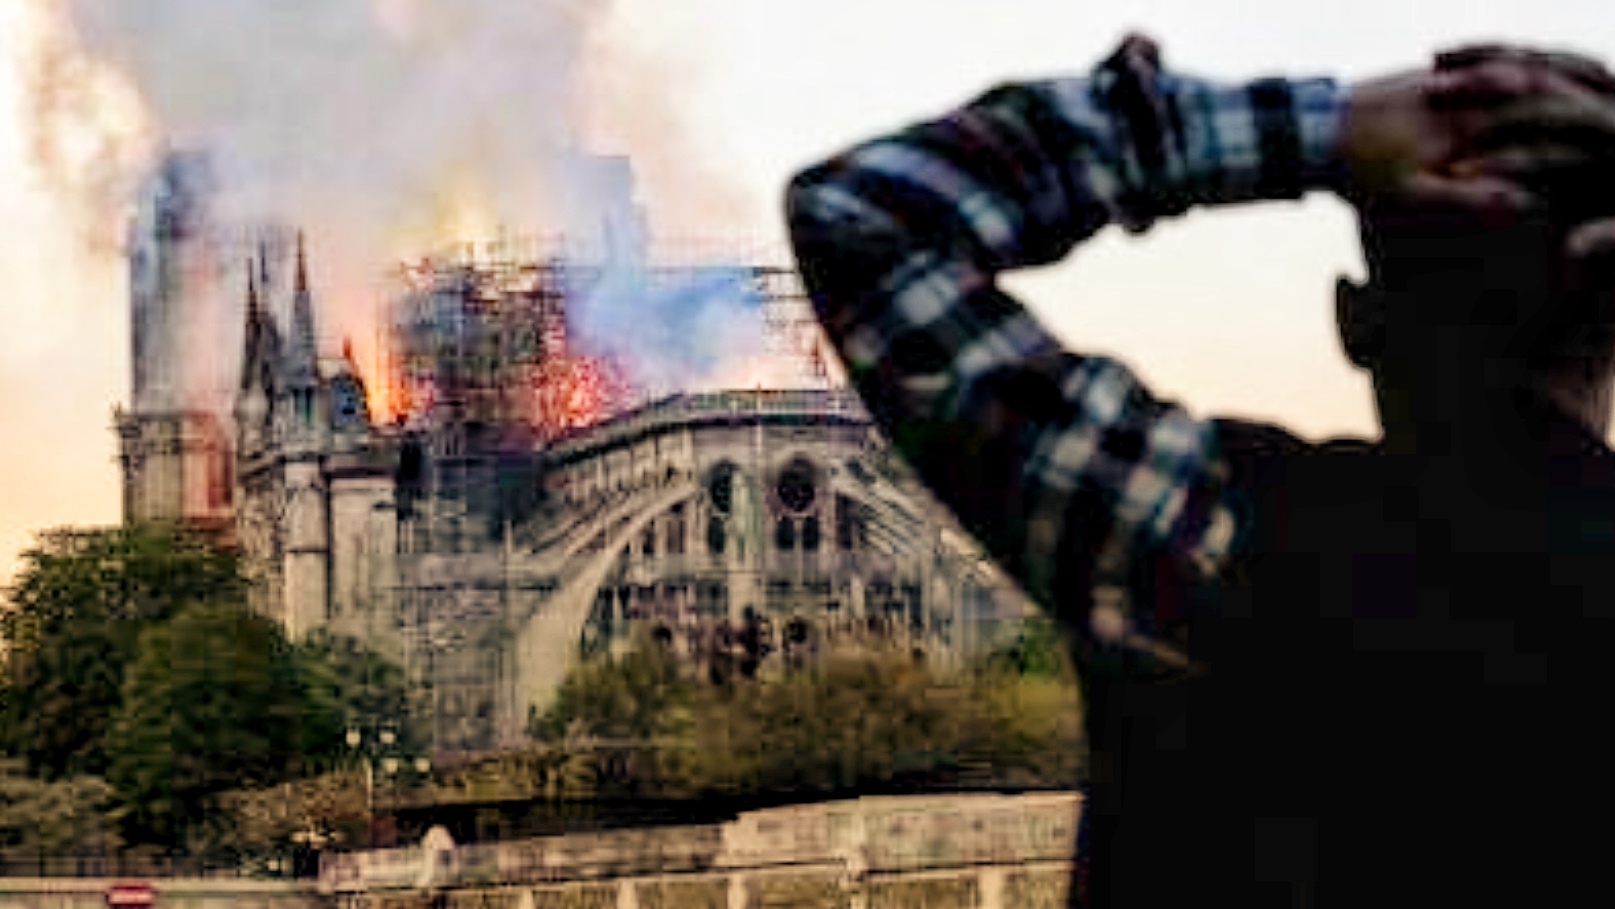 Con incendio en Notre Dame el mundo pierde parte de su historia